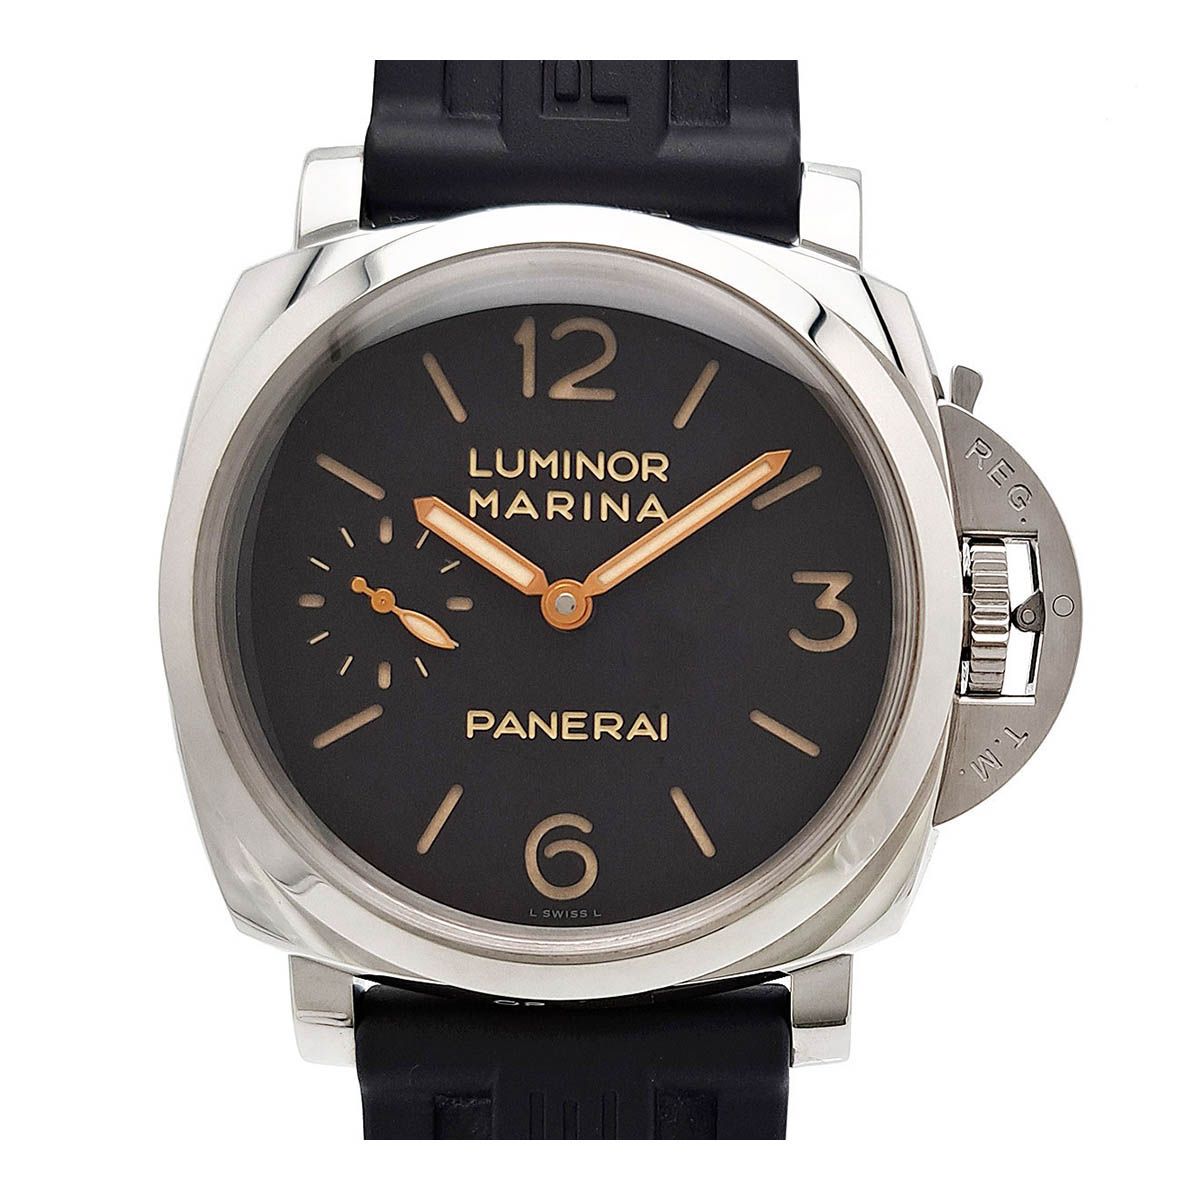 オフィチーネ・パネライ Officine panerai PAM00422 ルミノールマリーナ1950 3デイズ ブラック 腕時計【中古】